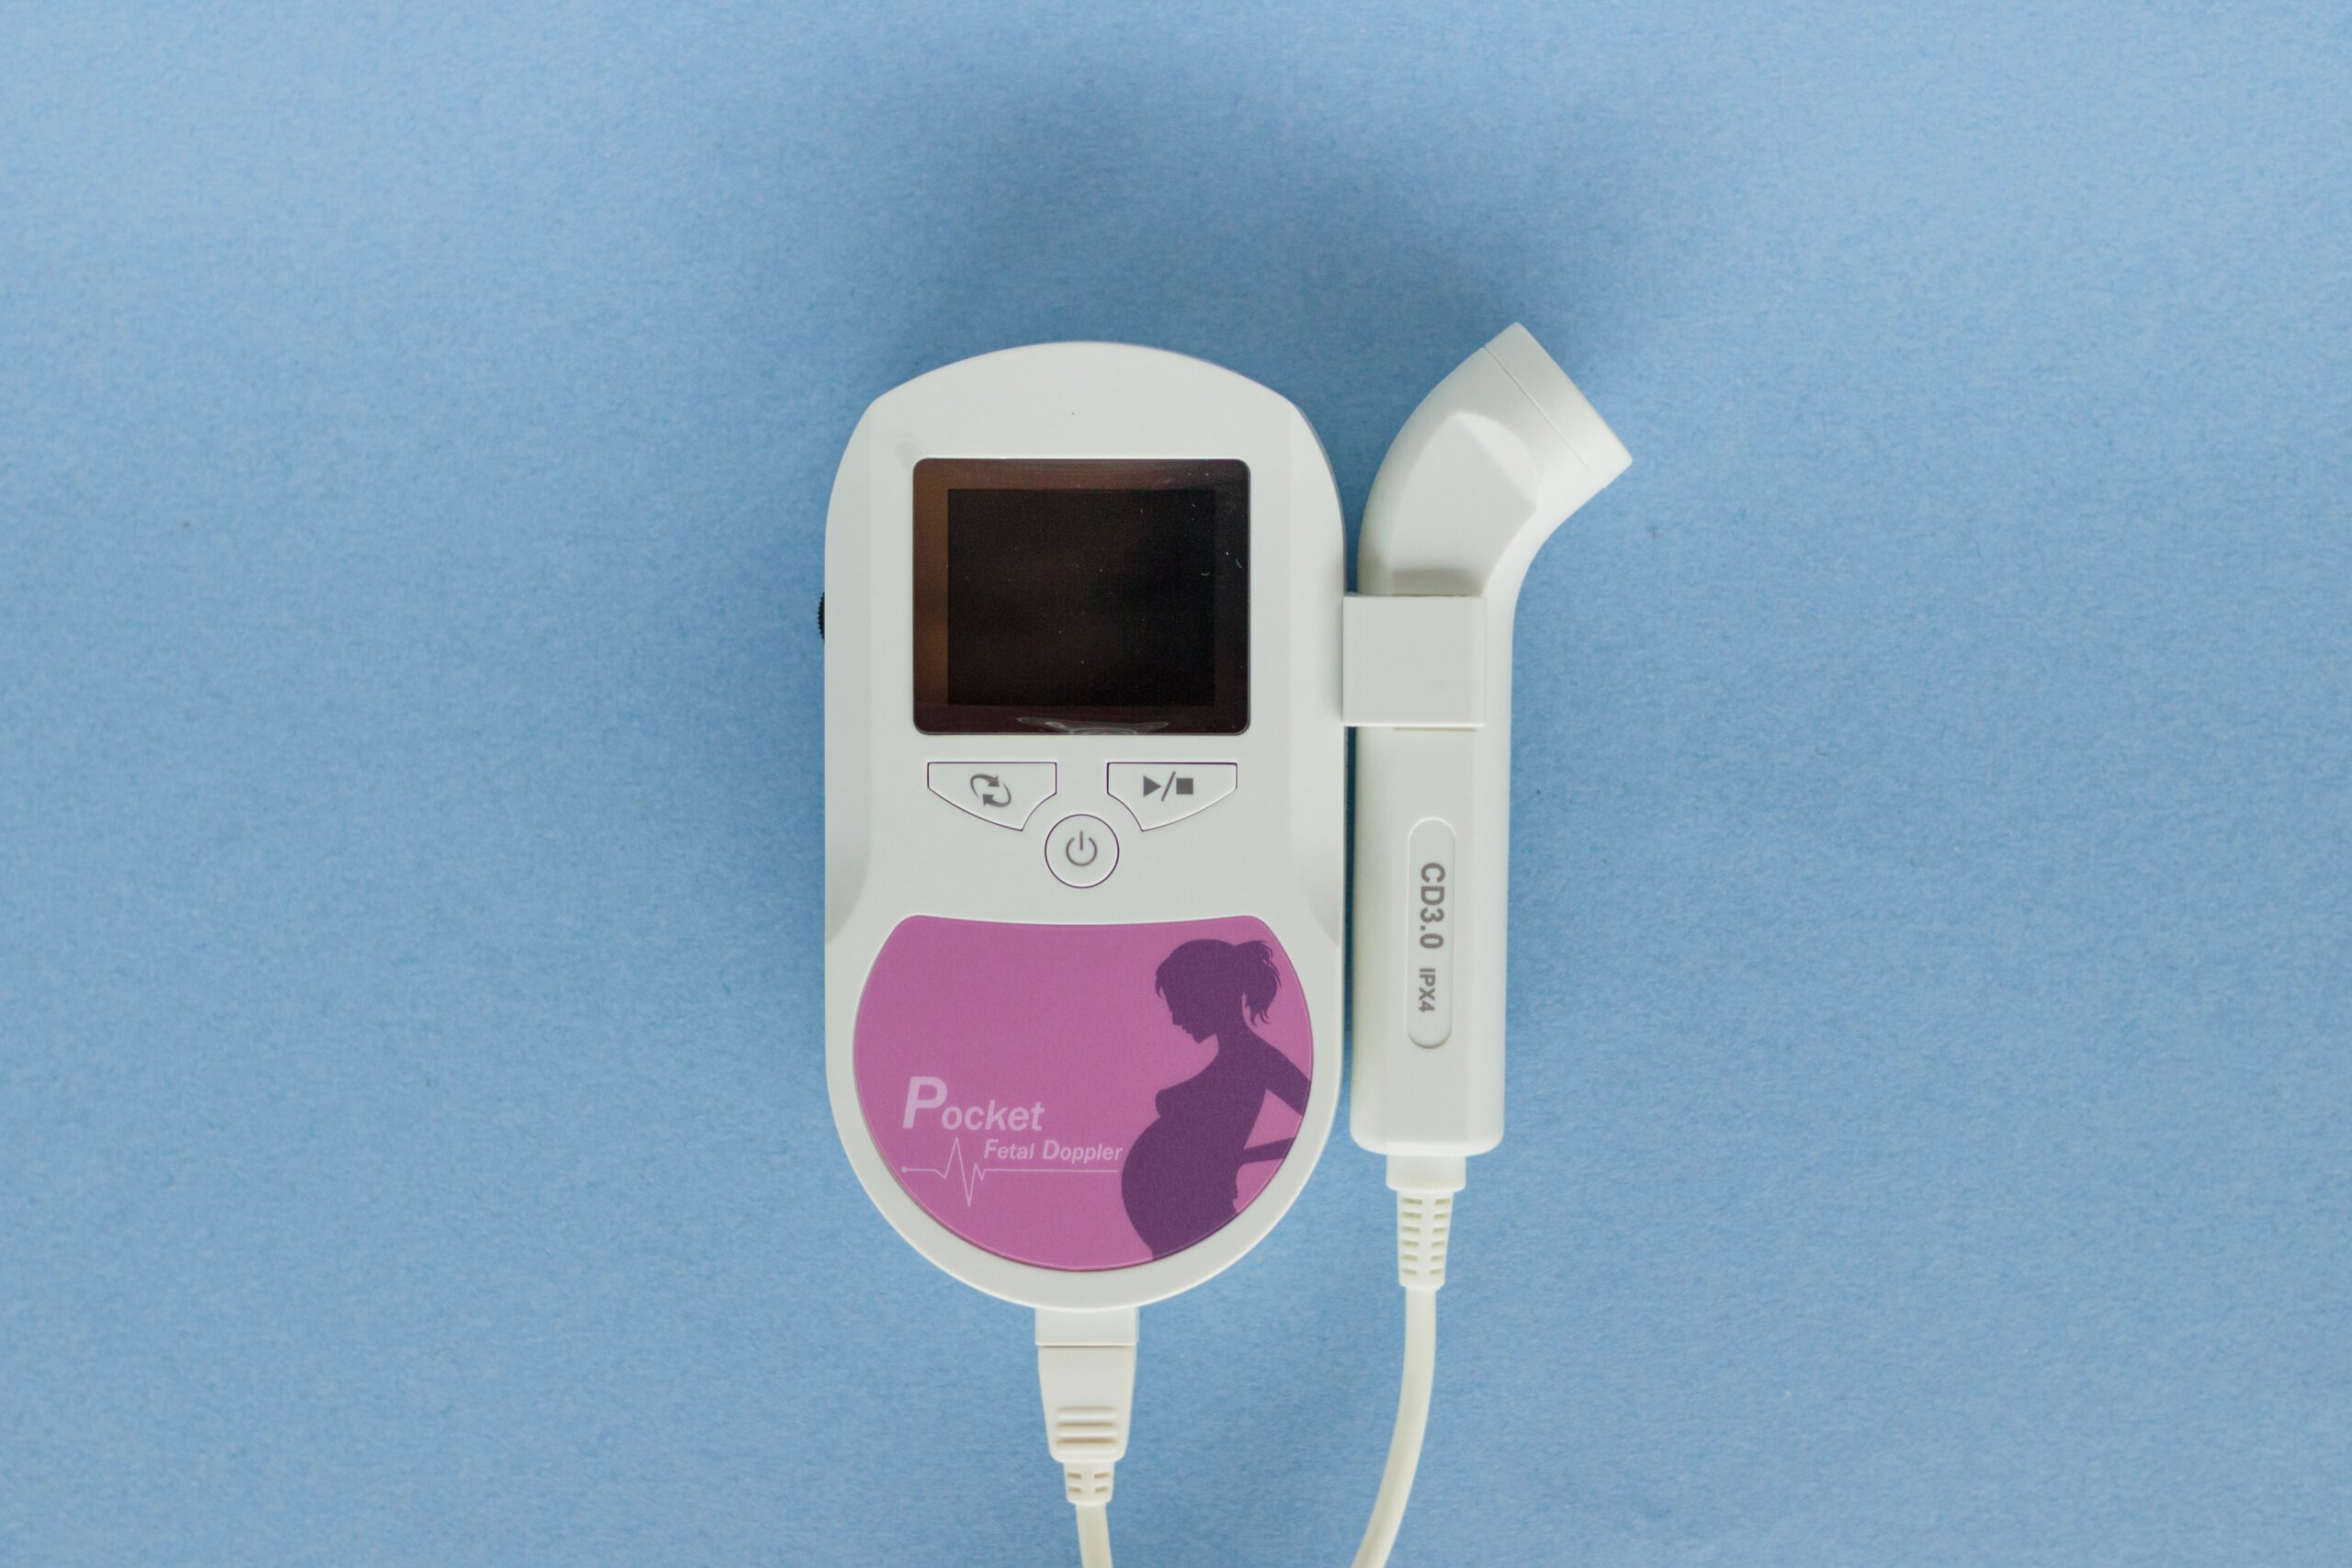 Doppler fœtal : les appareils maison sont-ils dangereux ?